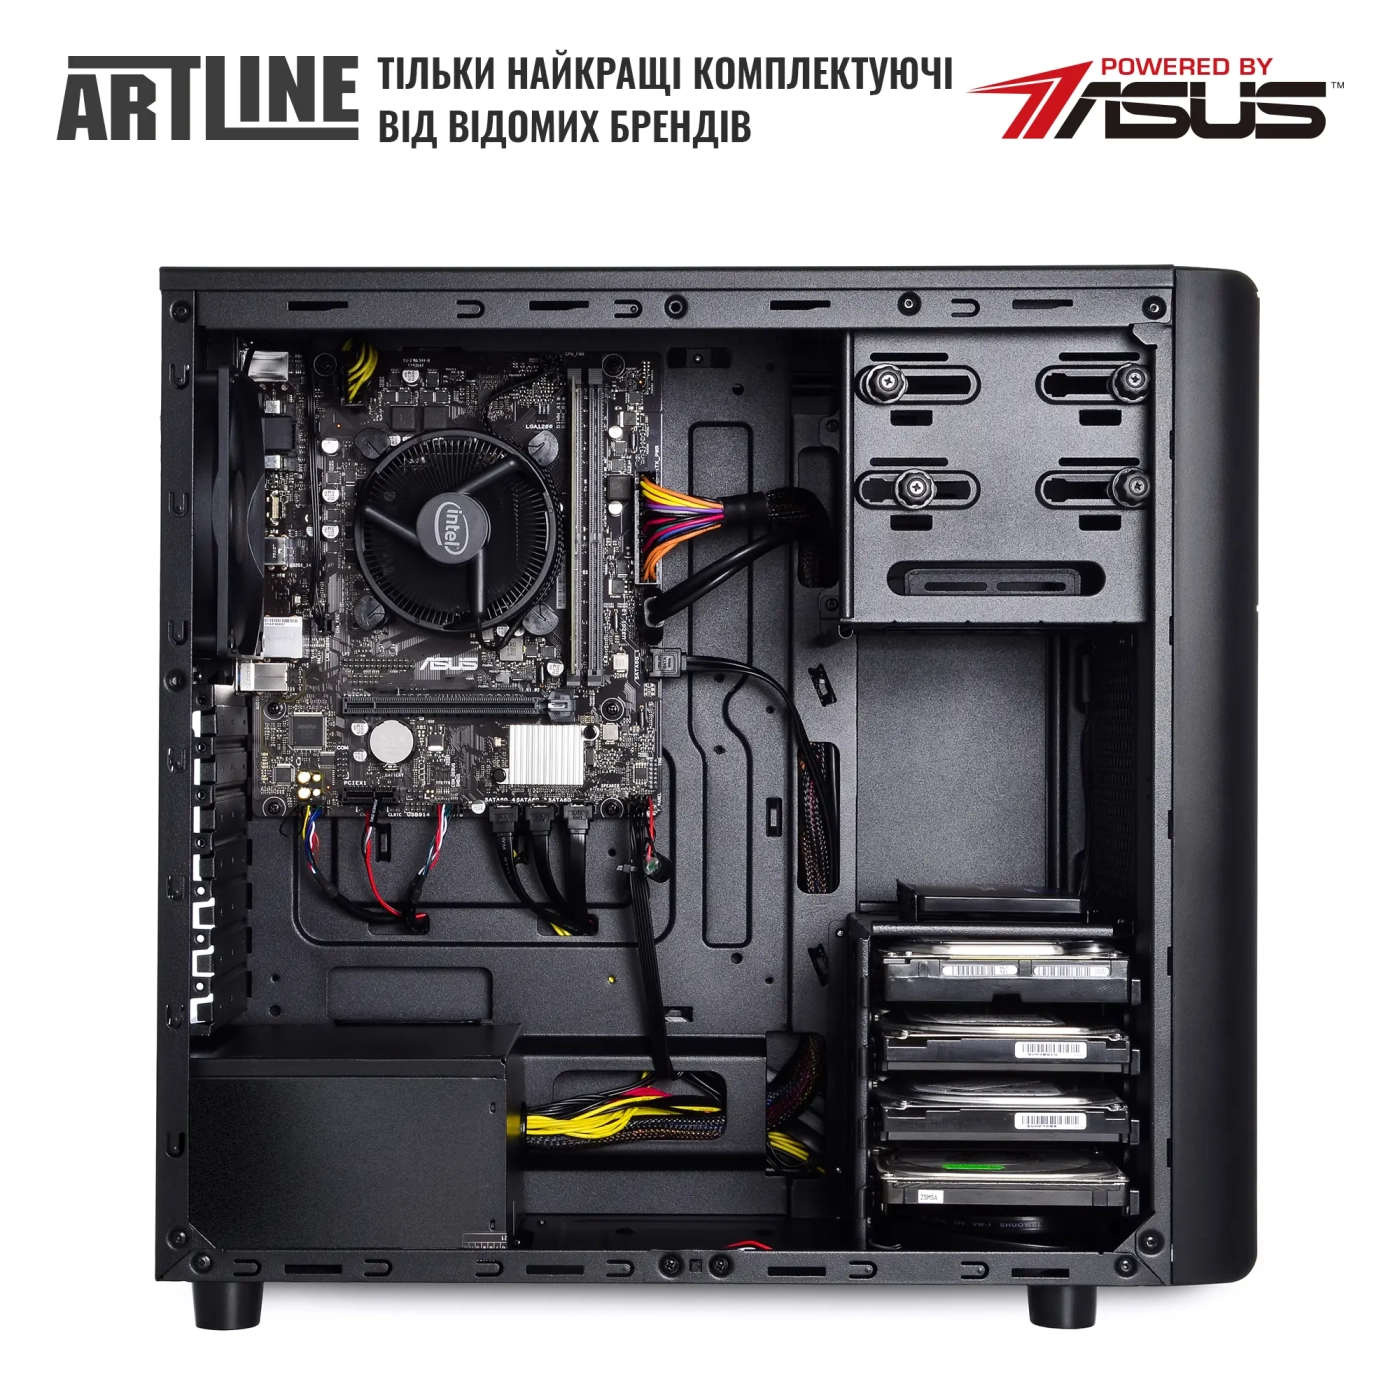 Купить Сервер ARTLINE Business T35 (T35v33) - фото 4